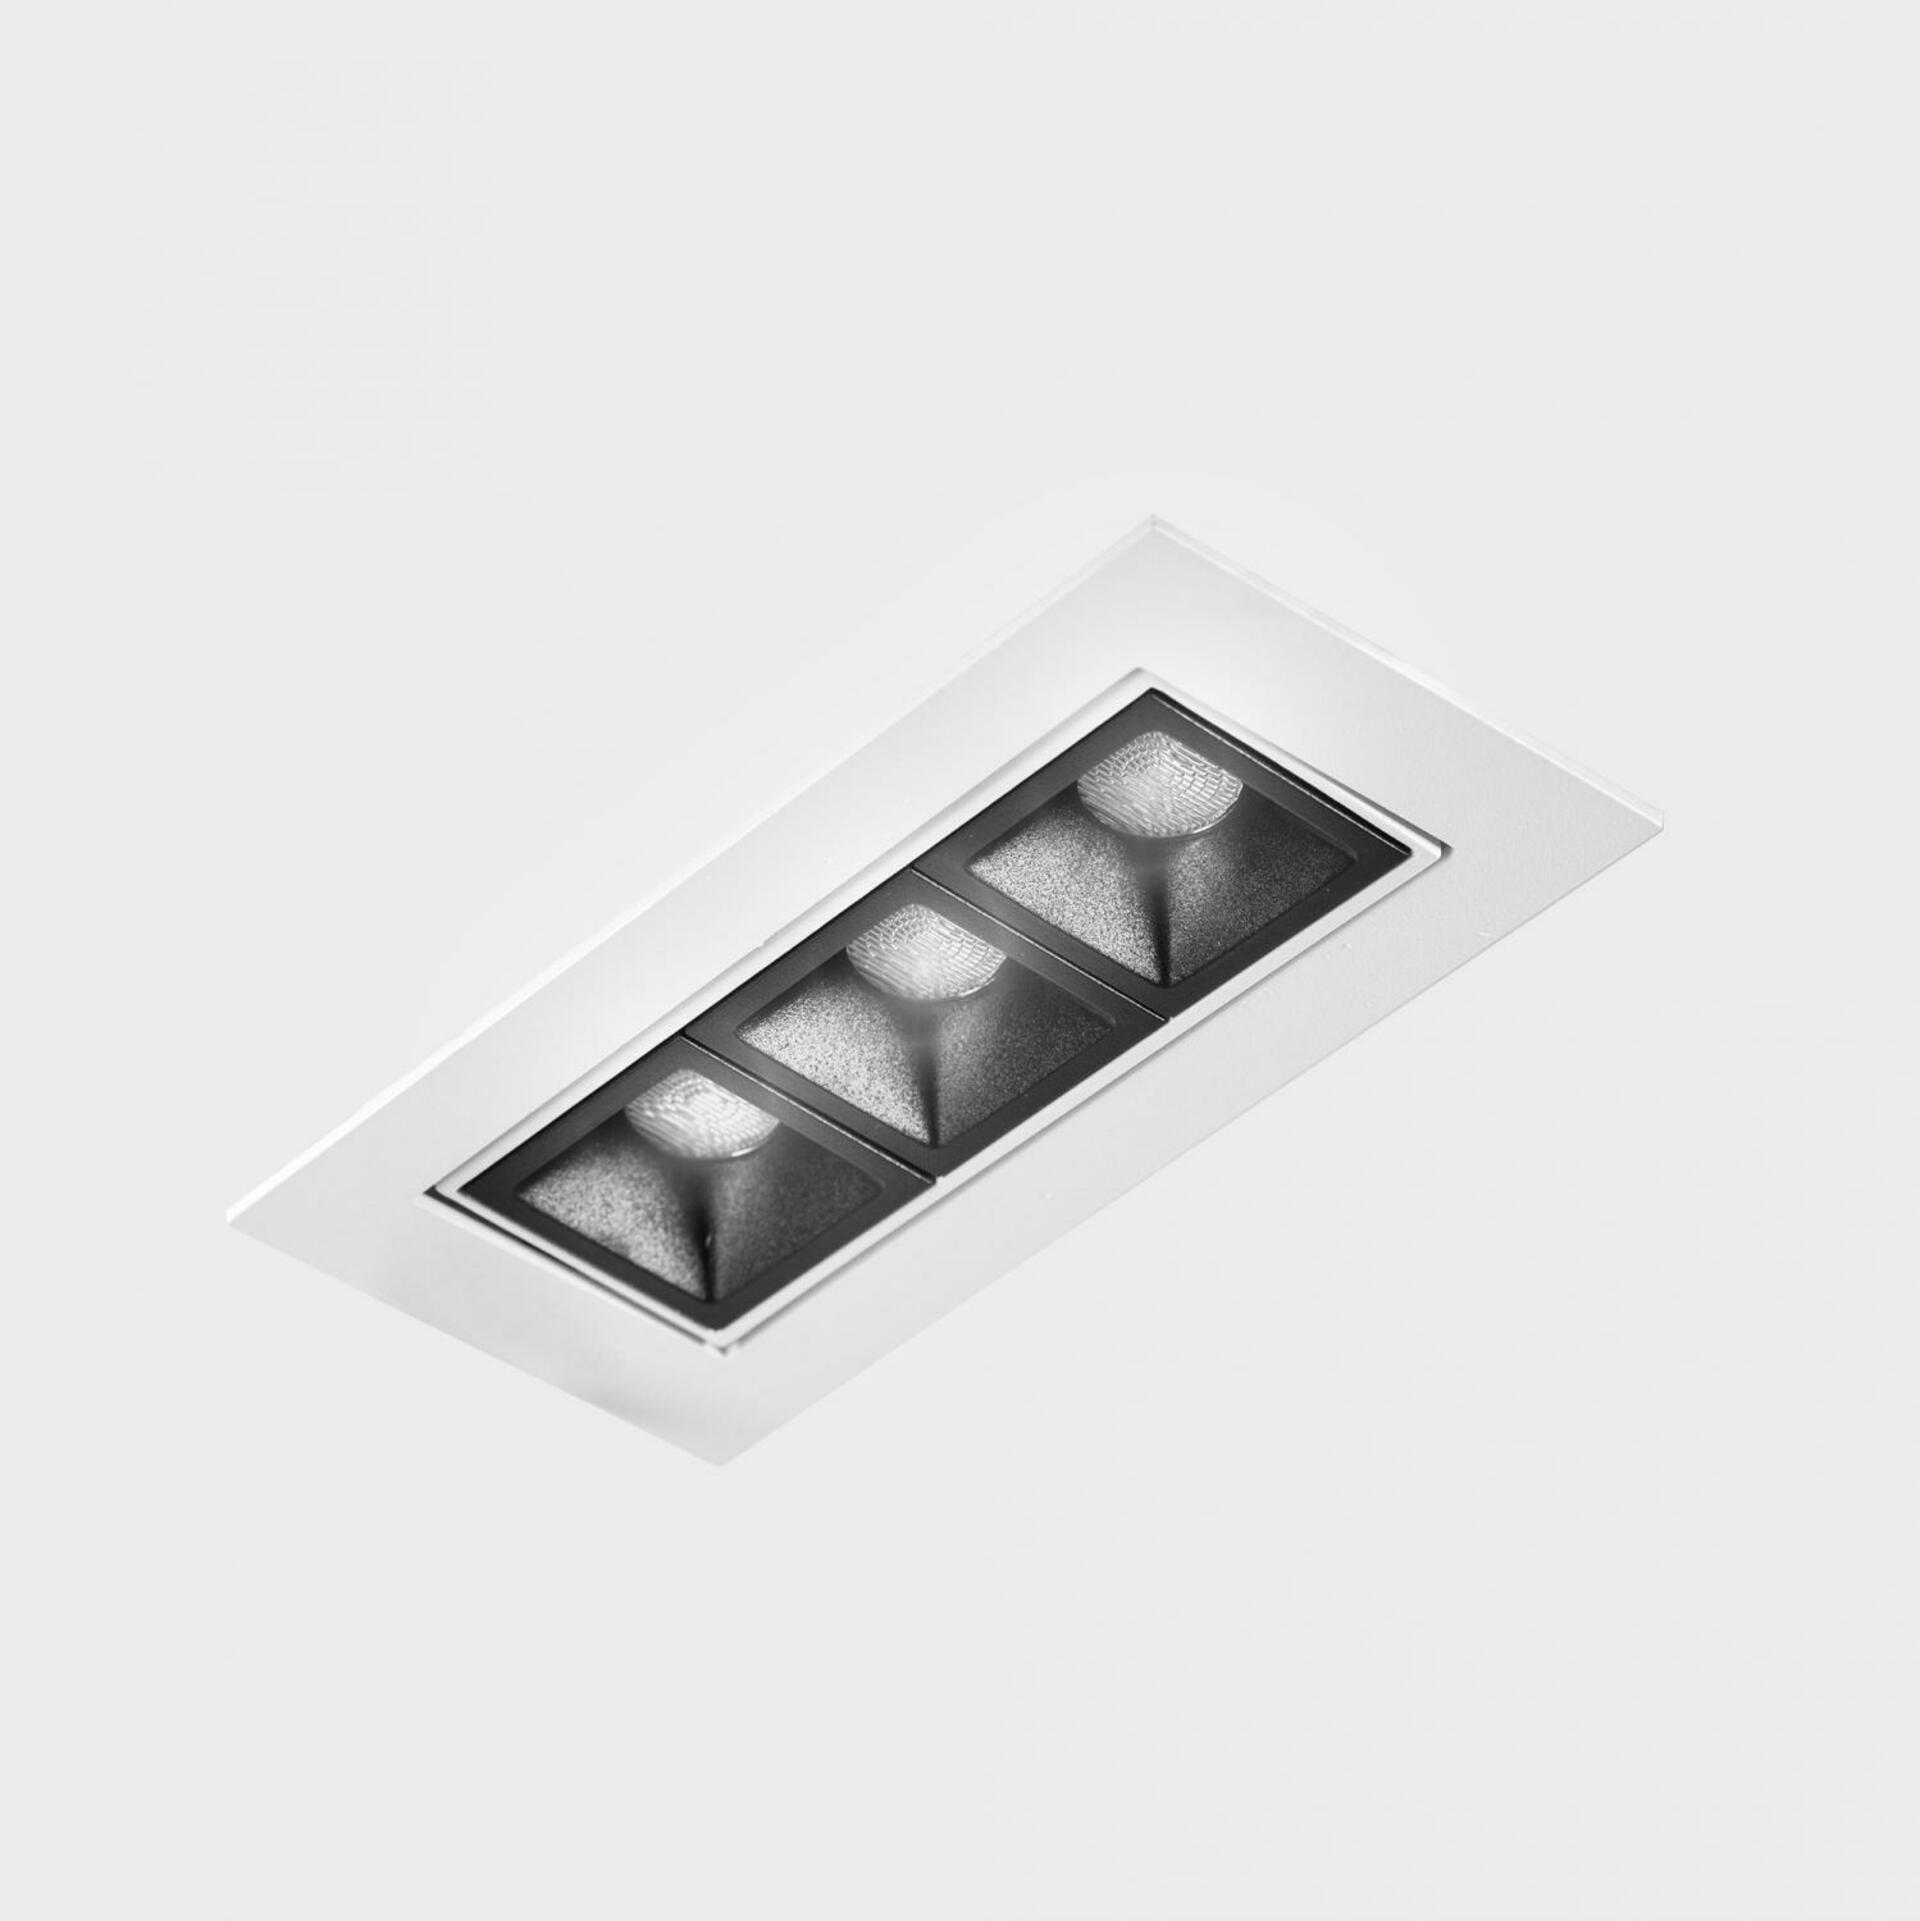 KOHL LIGHTING KOHL-Lighting NSES TILT zapuštěné svítidlo s rámečkem 123x58 mm bílá-černá 6 W CRI 90 2700K PUSH